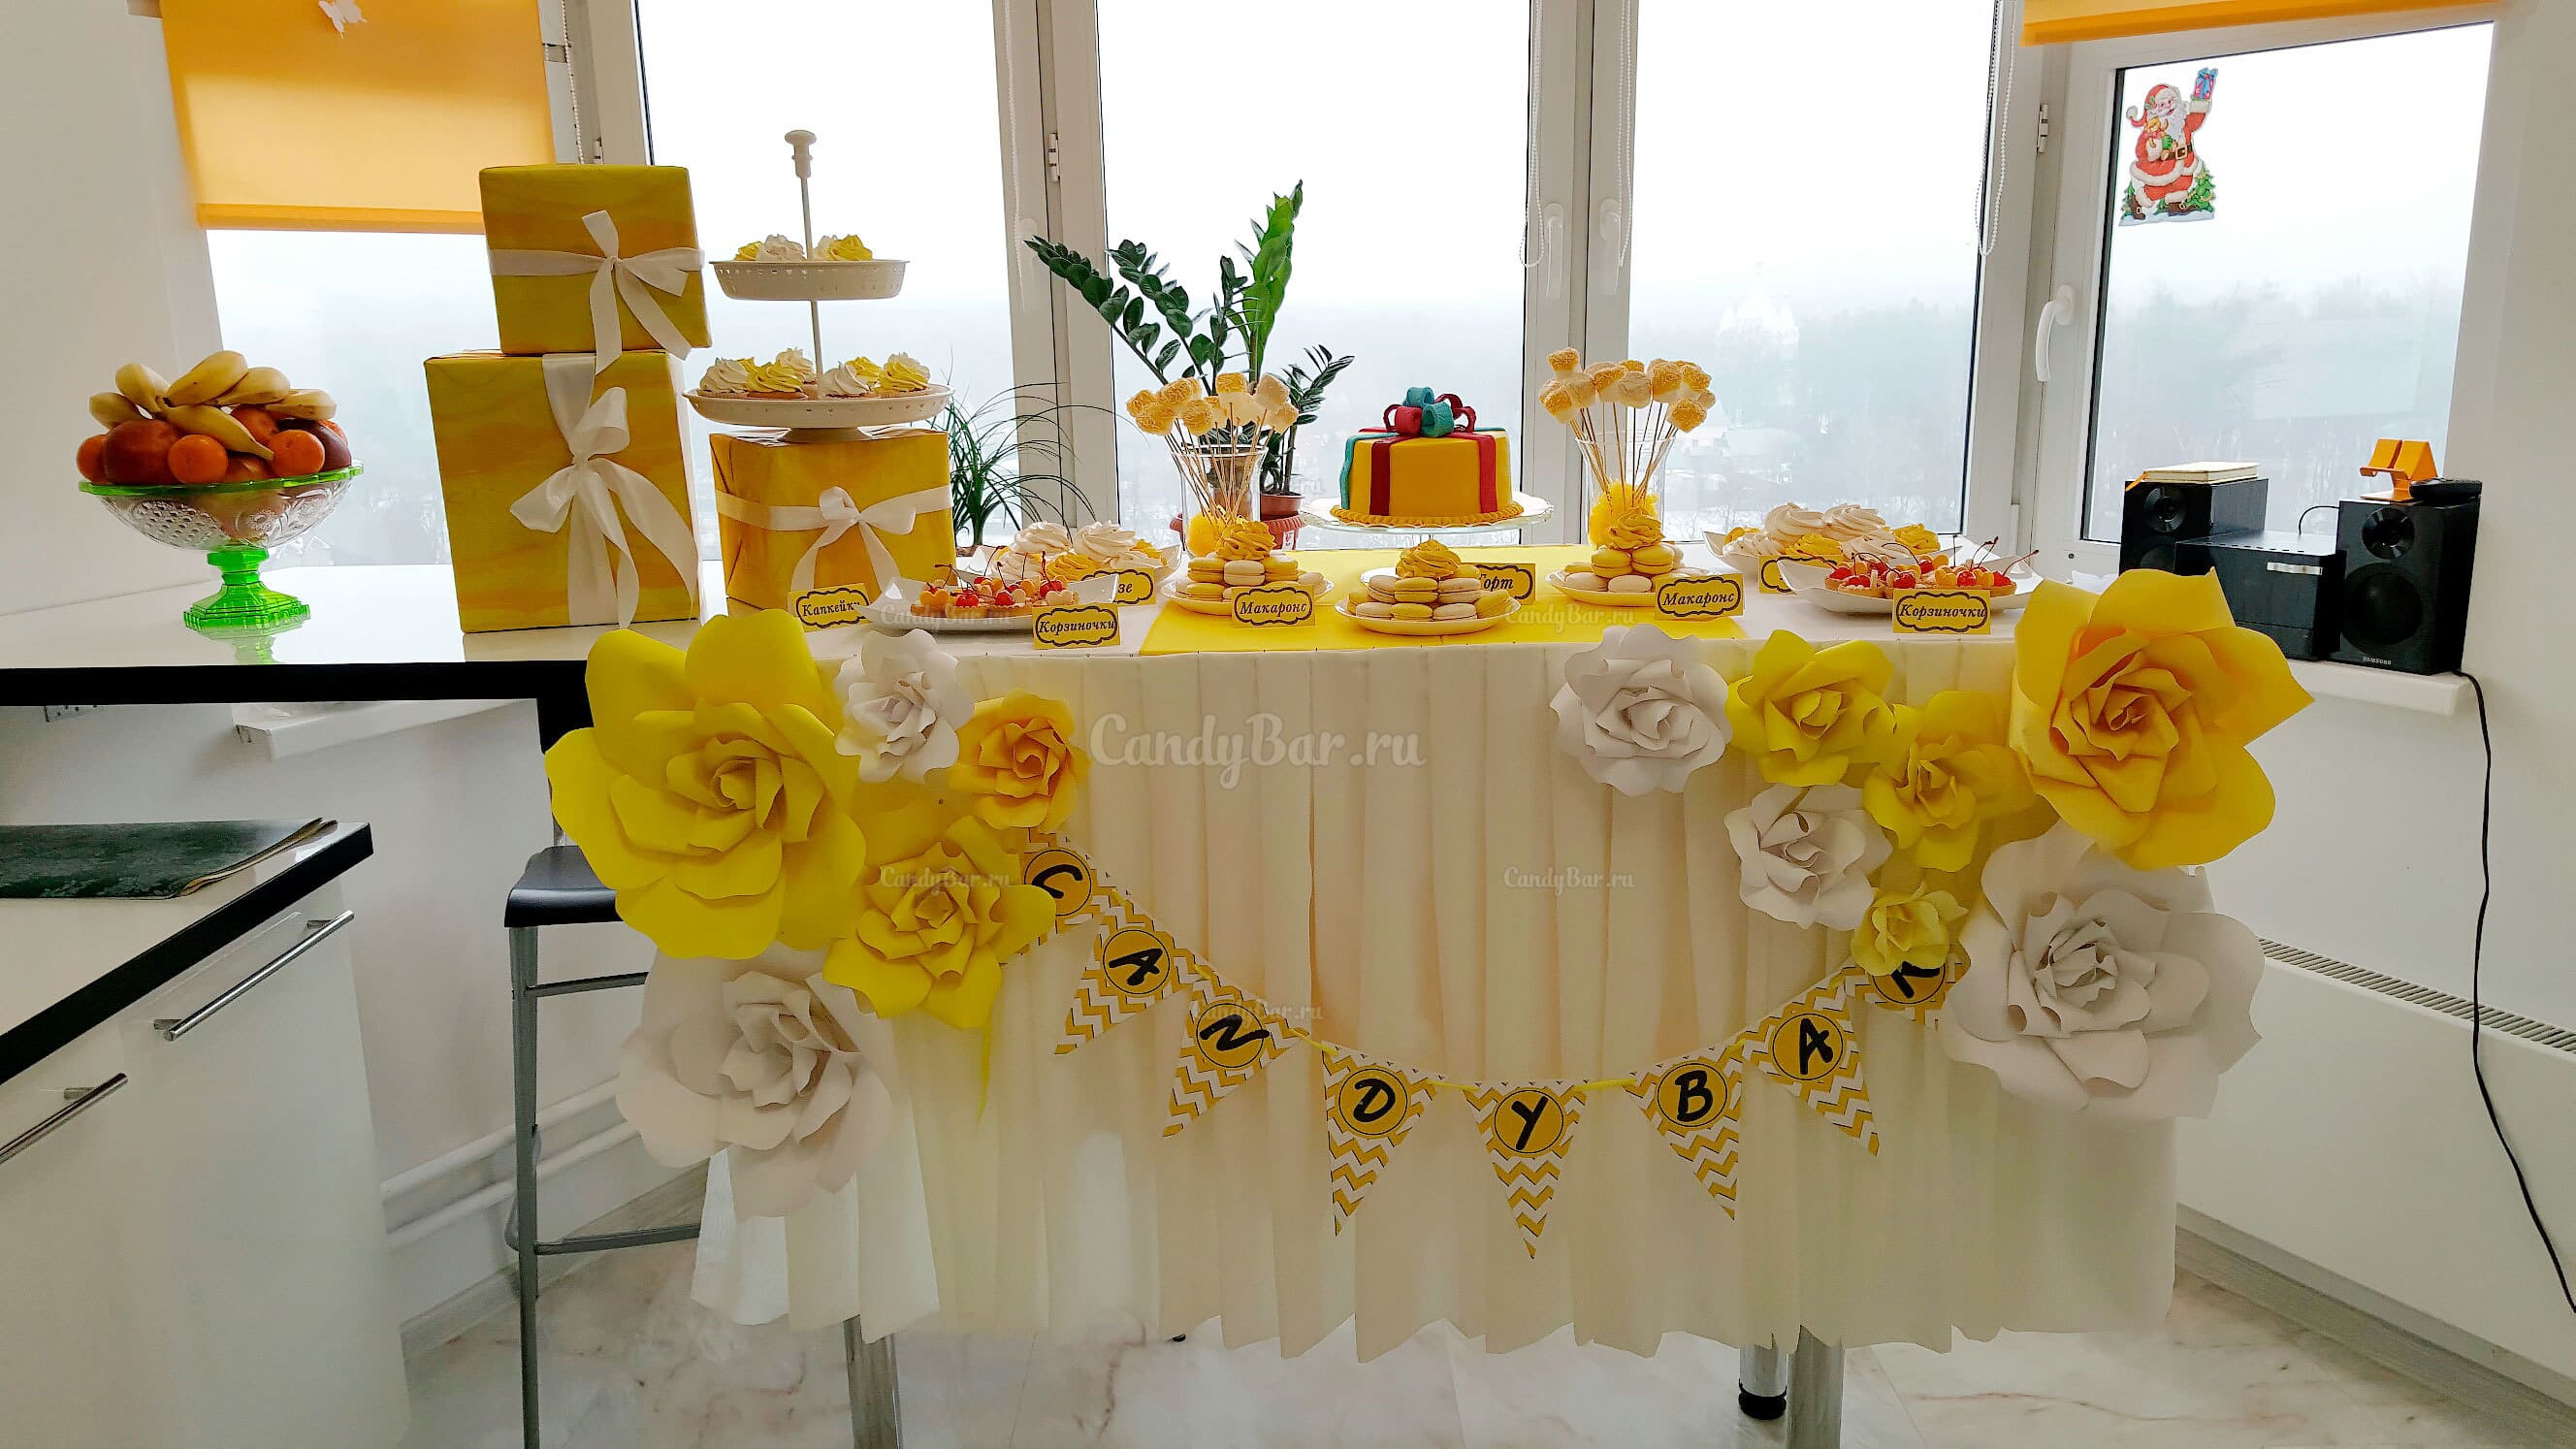 Сладкий стол на день рождения в желтом цвете